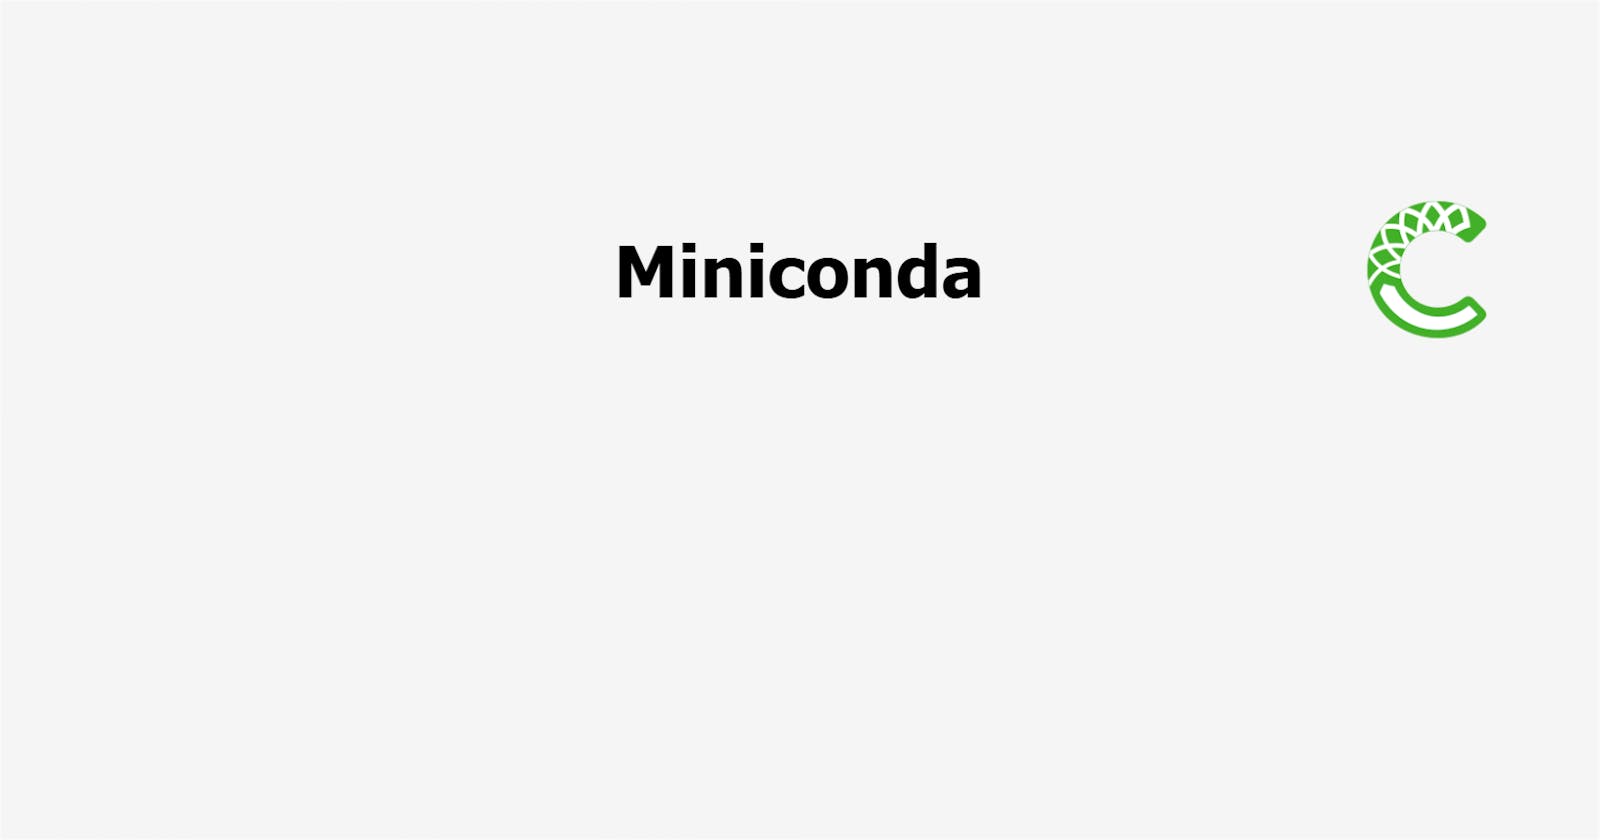 Transitioning from Anaconda to Miniconda